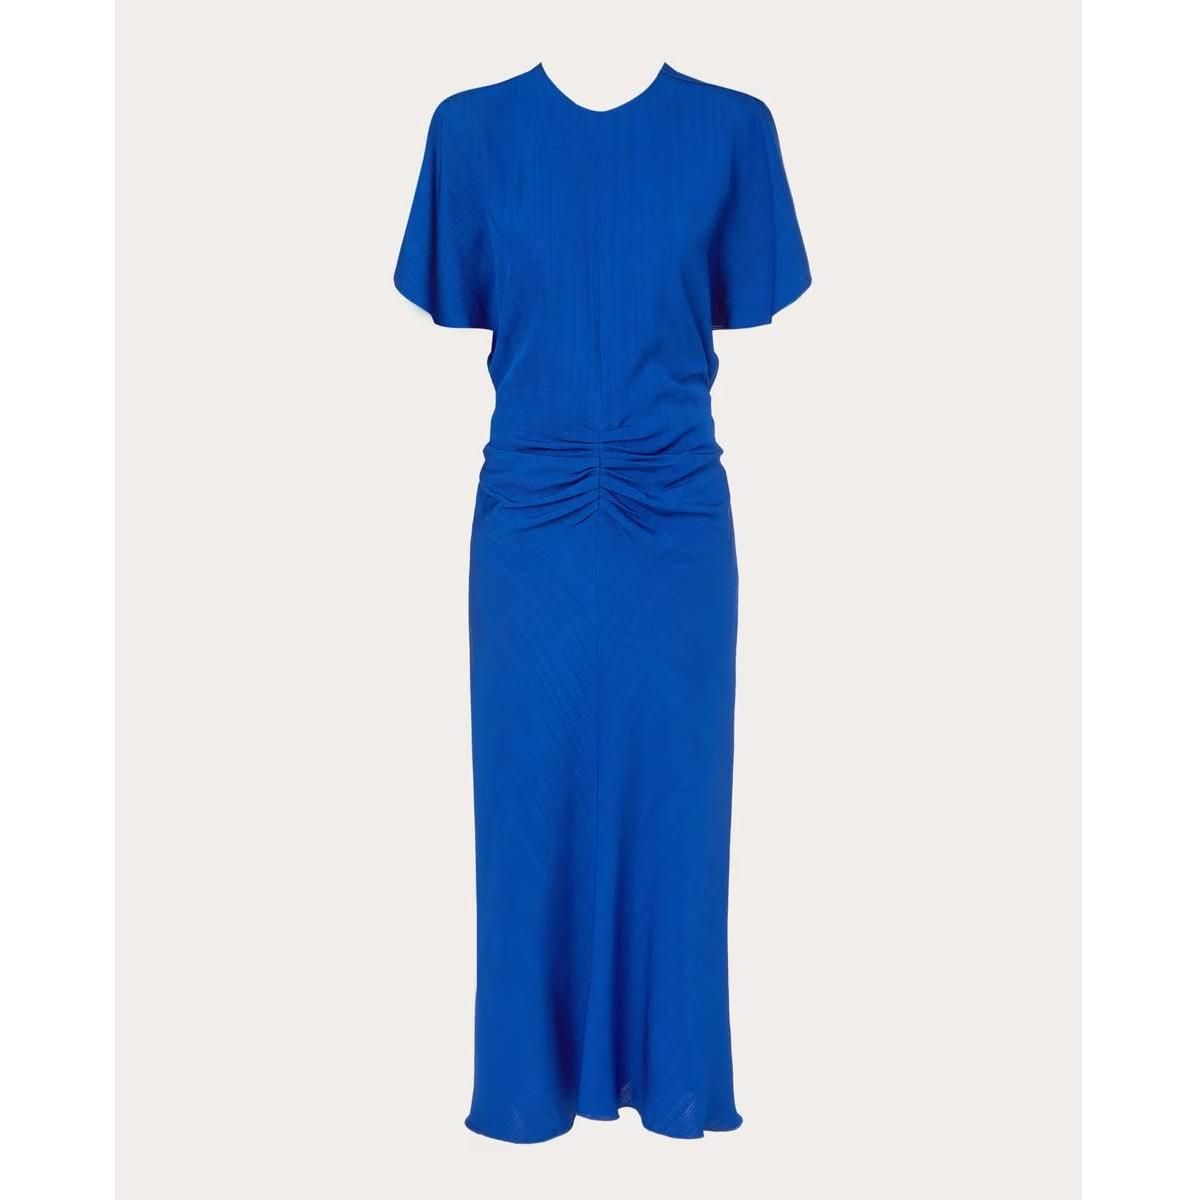 Vestido de invitada en color azul, de Victoria Beckham